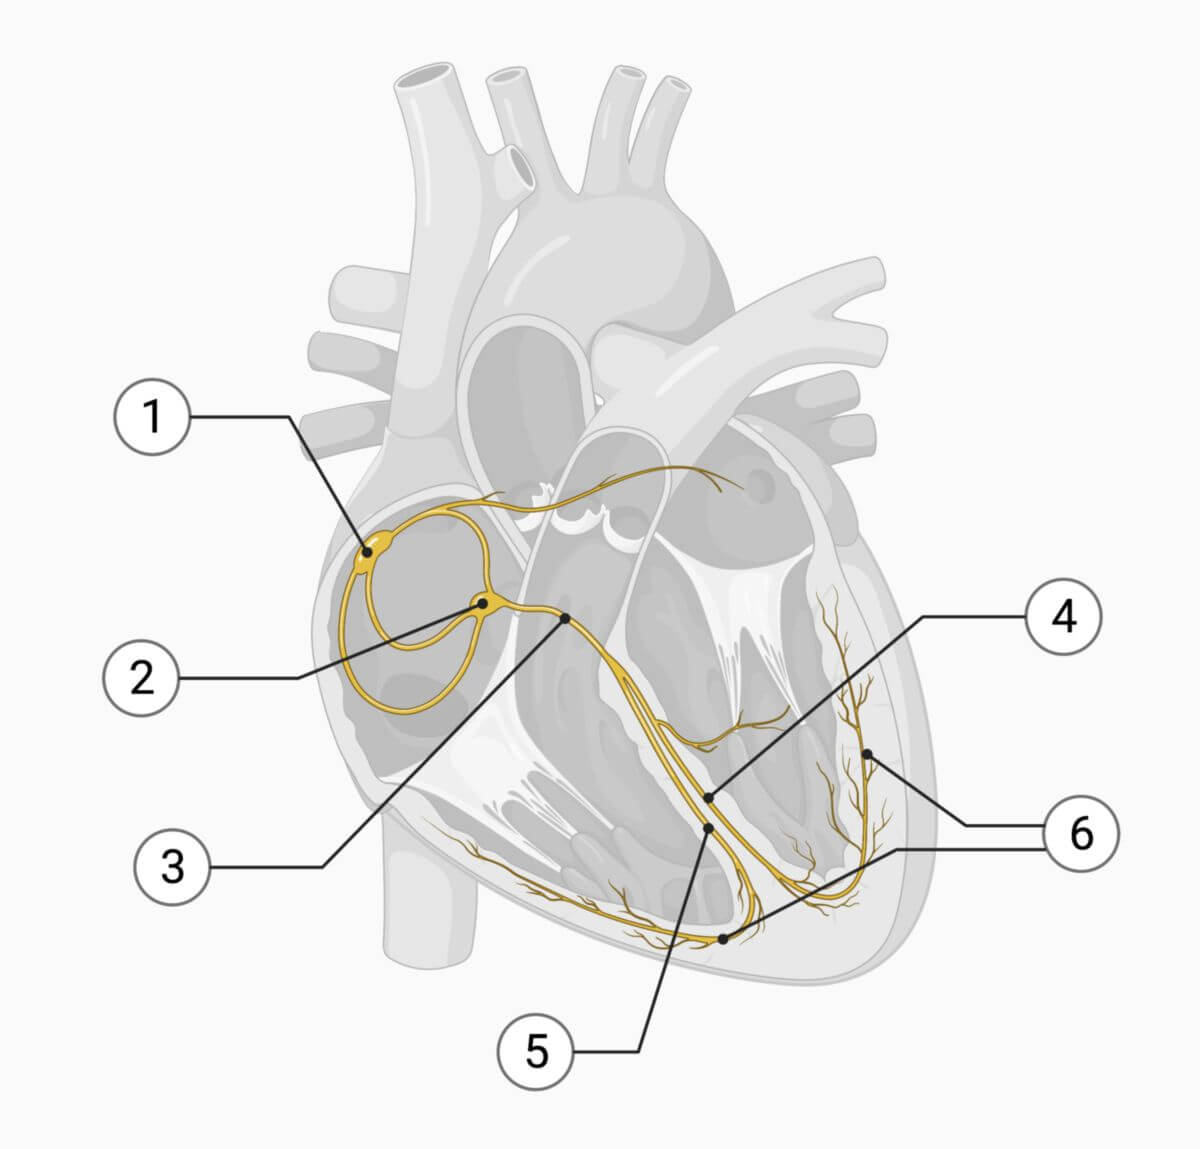 Strukturen des Reizleitungssystems: (1) Sinusknoten, (2) AV-Knoten, (3) His-Bündel, (4) linker Tawara-Schenkel, (5) rechter Tawara-Schenkel, (6) Purkinje-Fasern